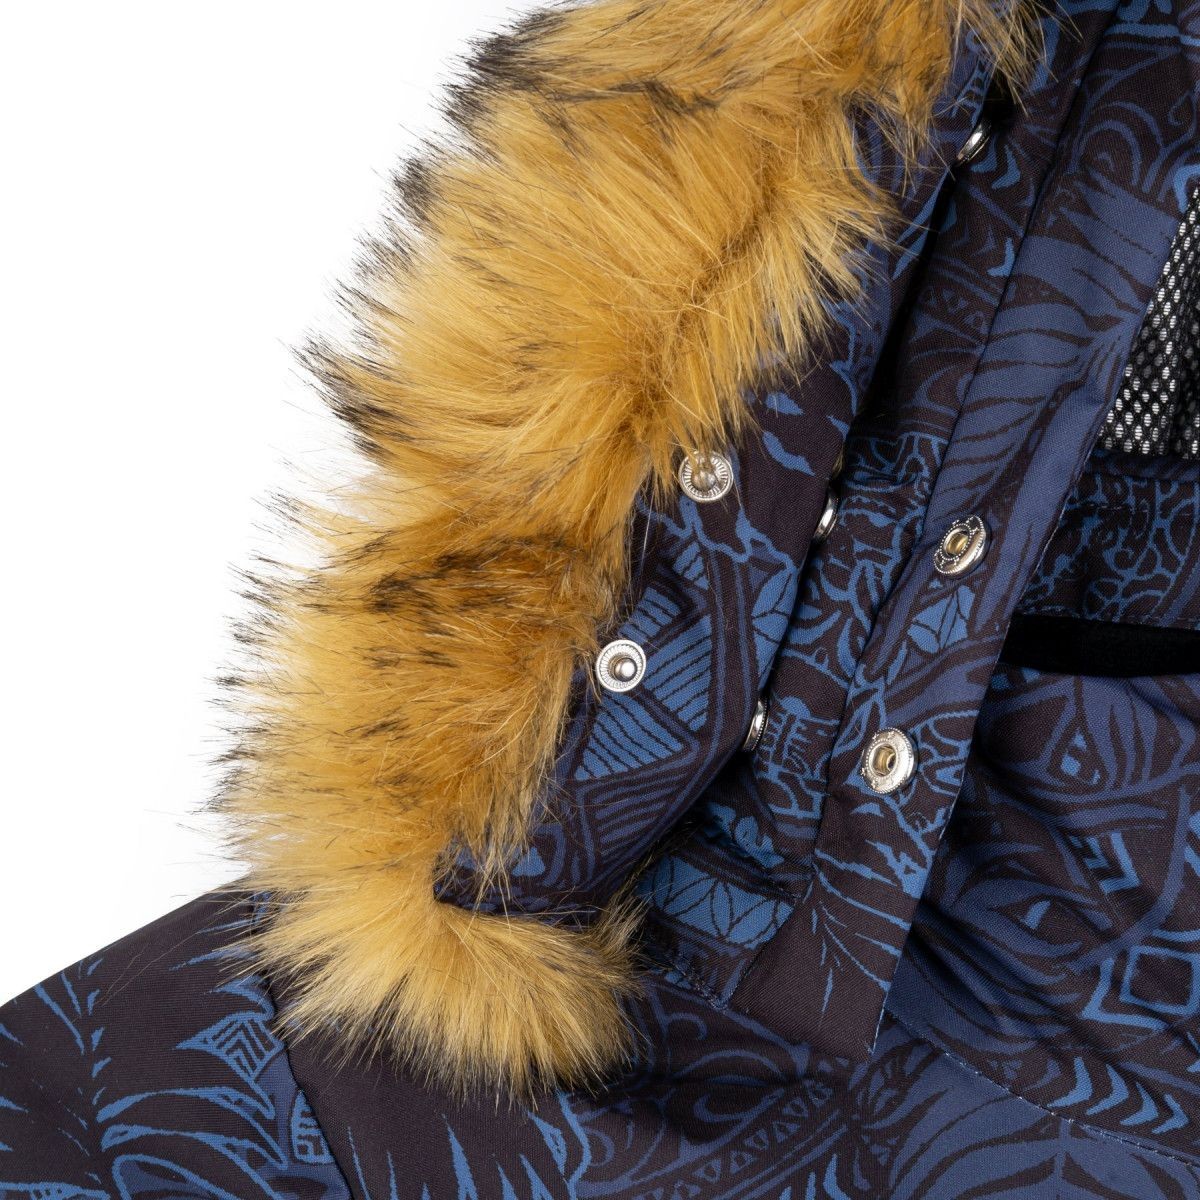 Lady`s Ski Jacket with heating system Lena-W Heat WHT KILPI - view 6